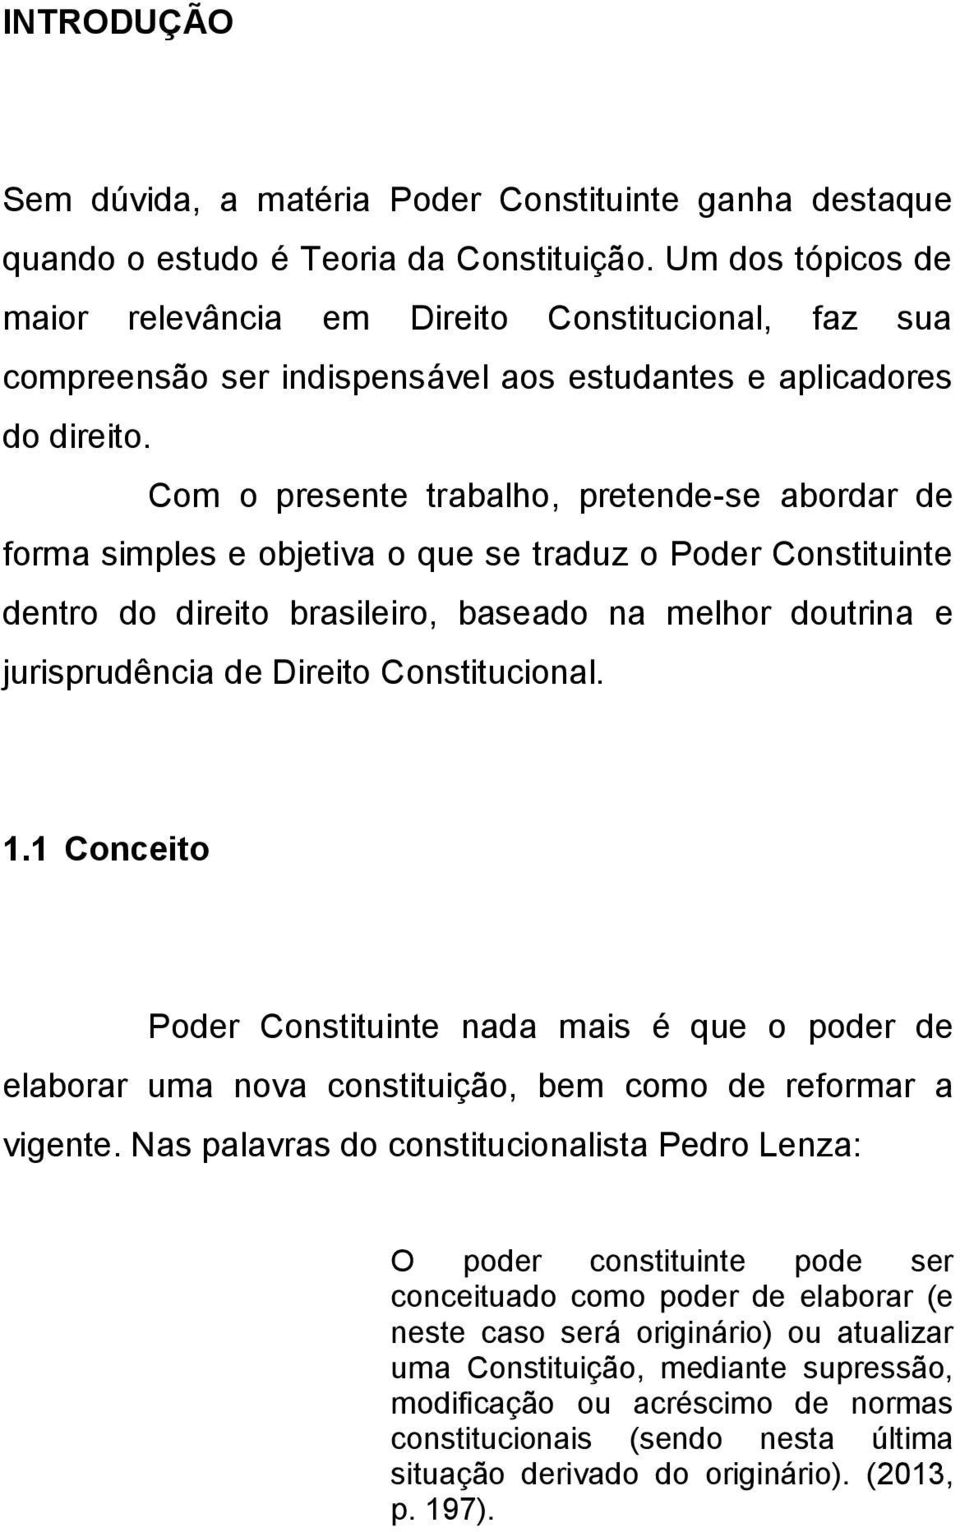 Com o presente trabalho, pretende-se abordar de forma simples e objetiva o que se traduz o Poder Constituinte dentro do direito brasileiro, baseado na melhor doutrina e jurisprudência de Direito